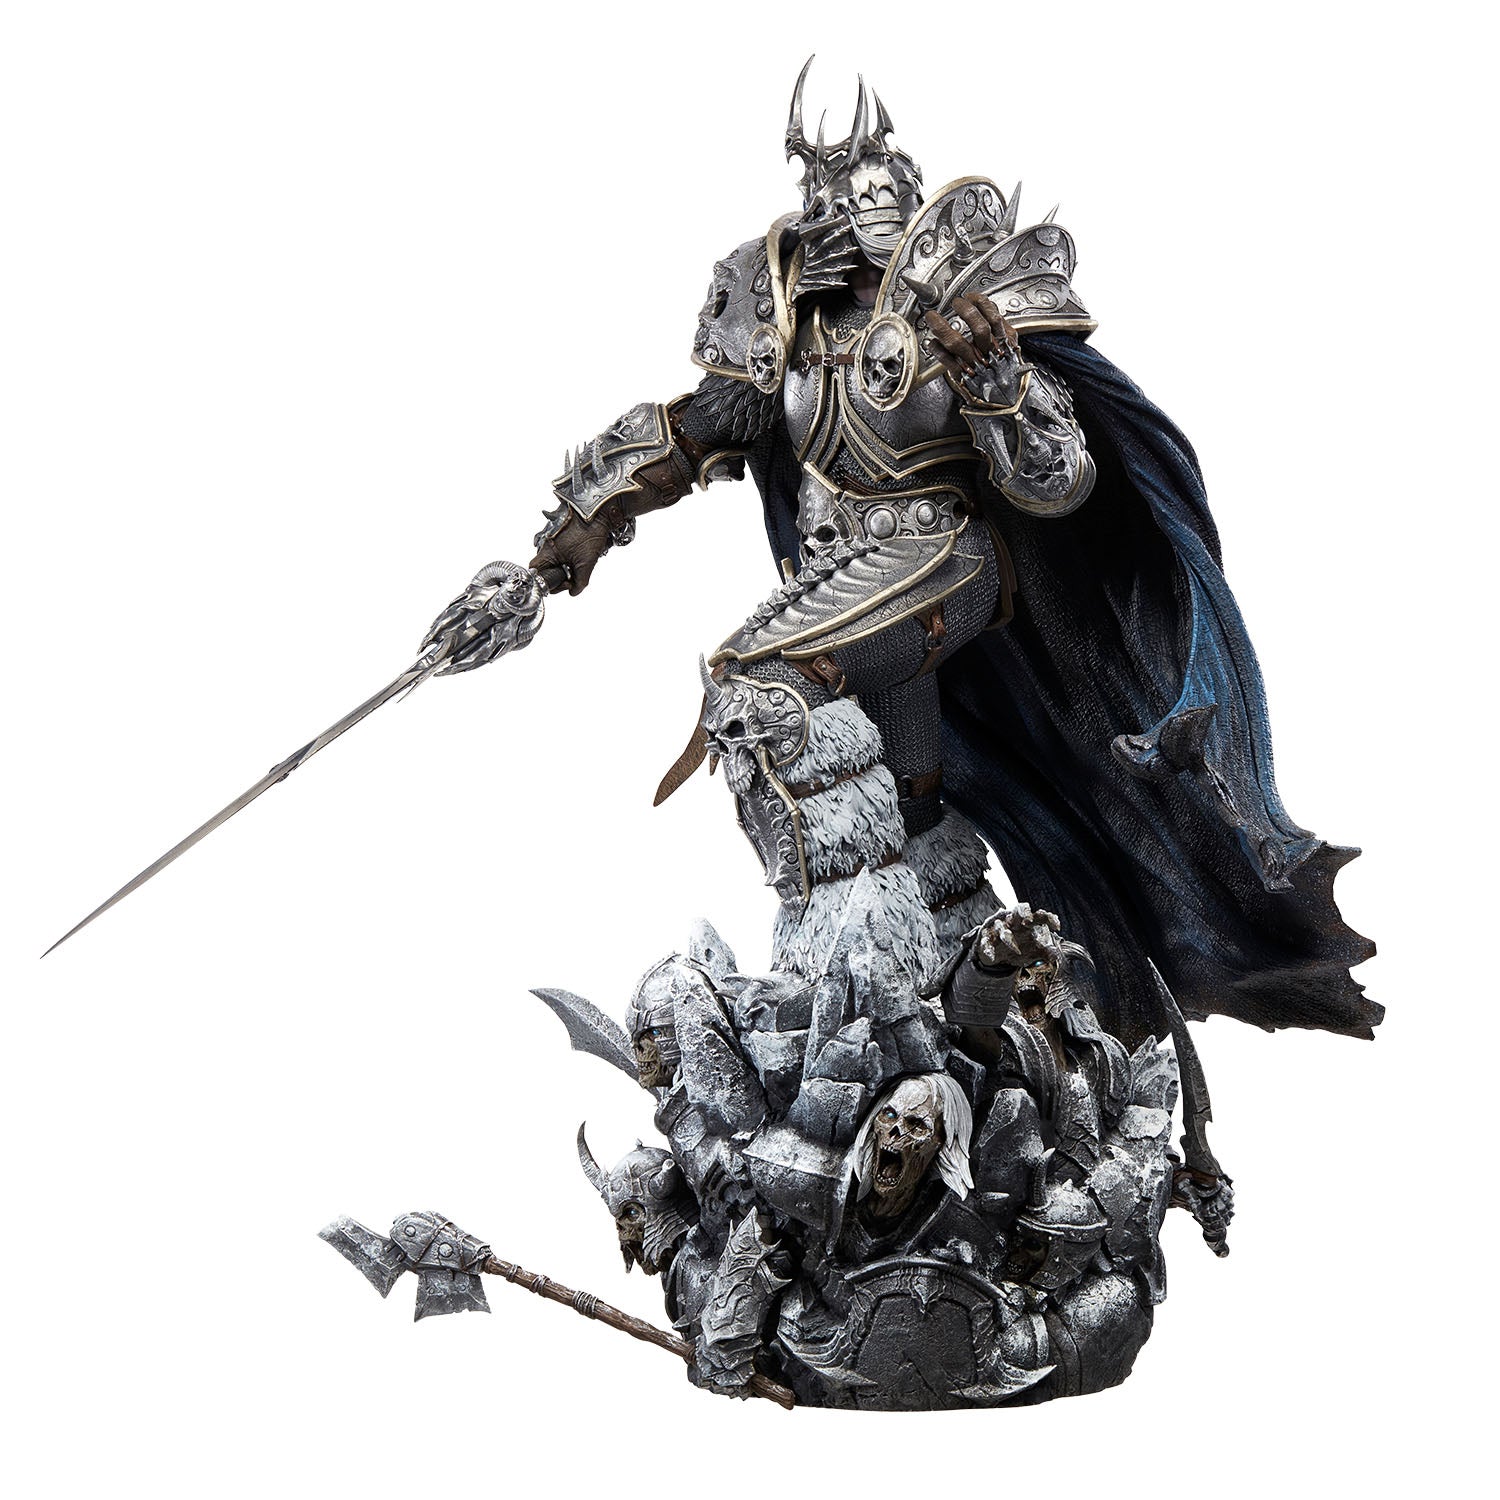 World of Warcraft Lich King Arthas Menethil 66cm Premium Statue - Left View